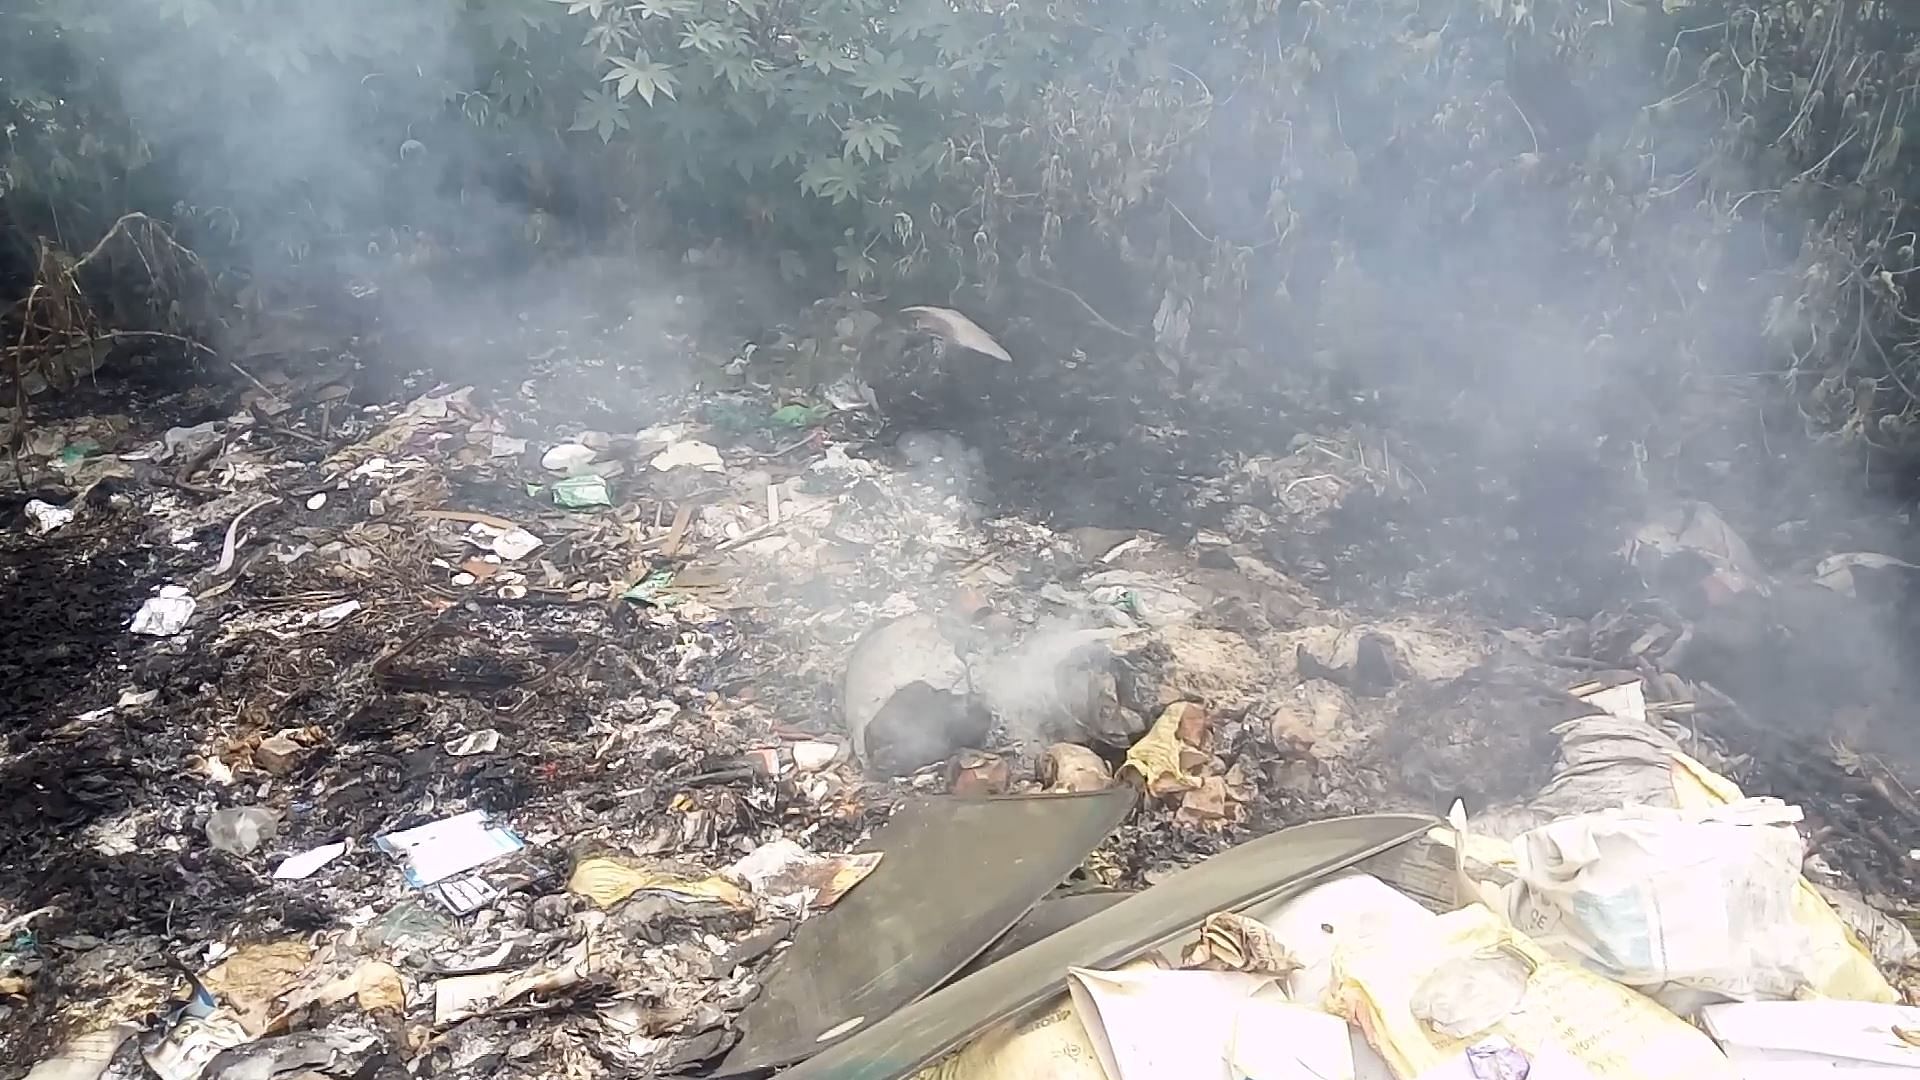 Garbage burning near JC Road (Photo by Tejas Dayananda Sagar)